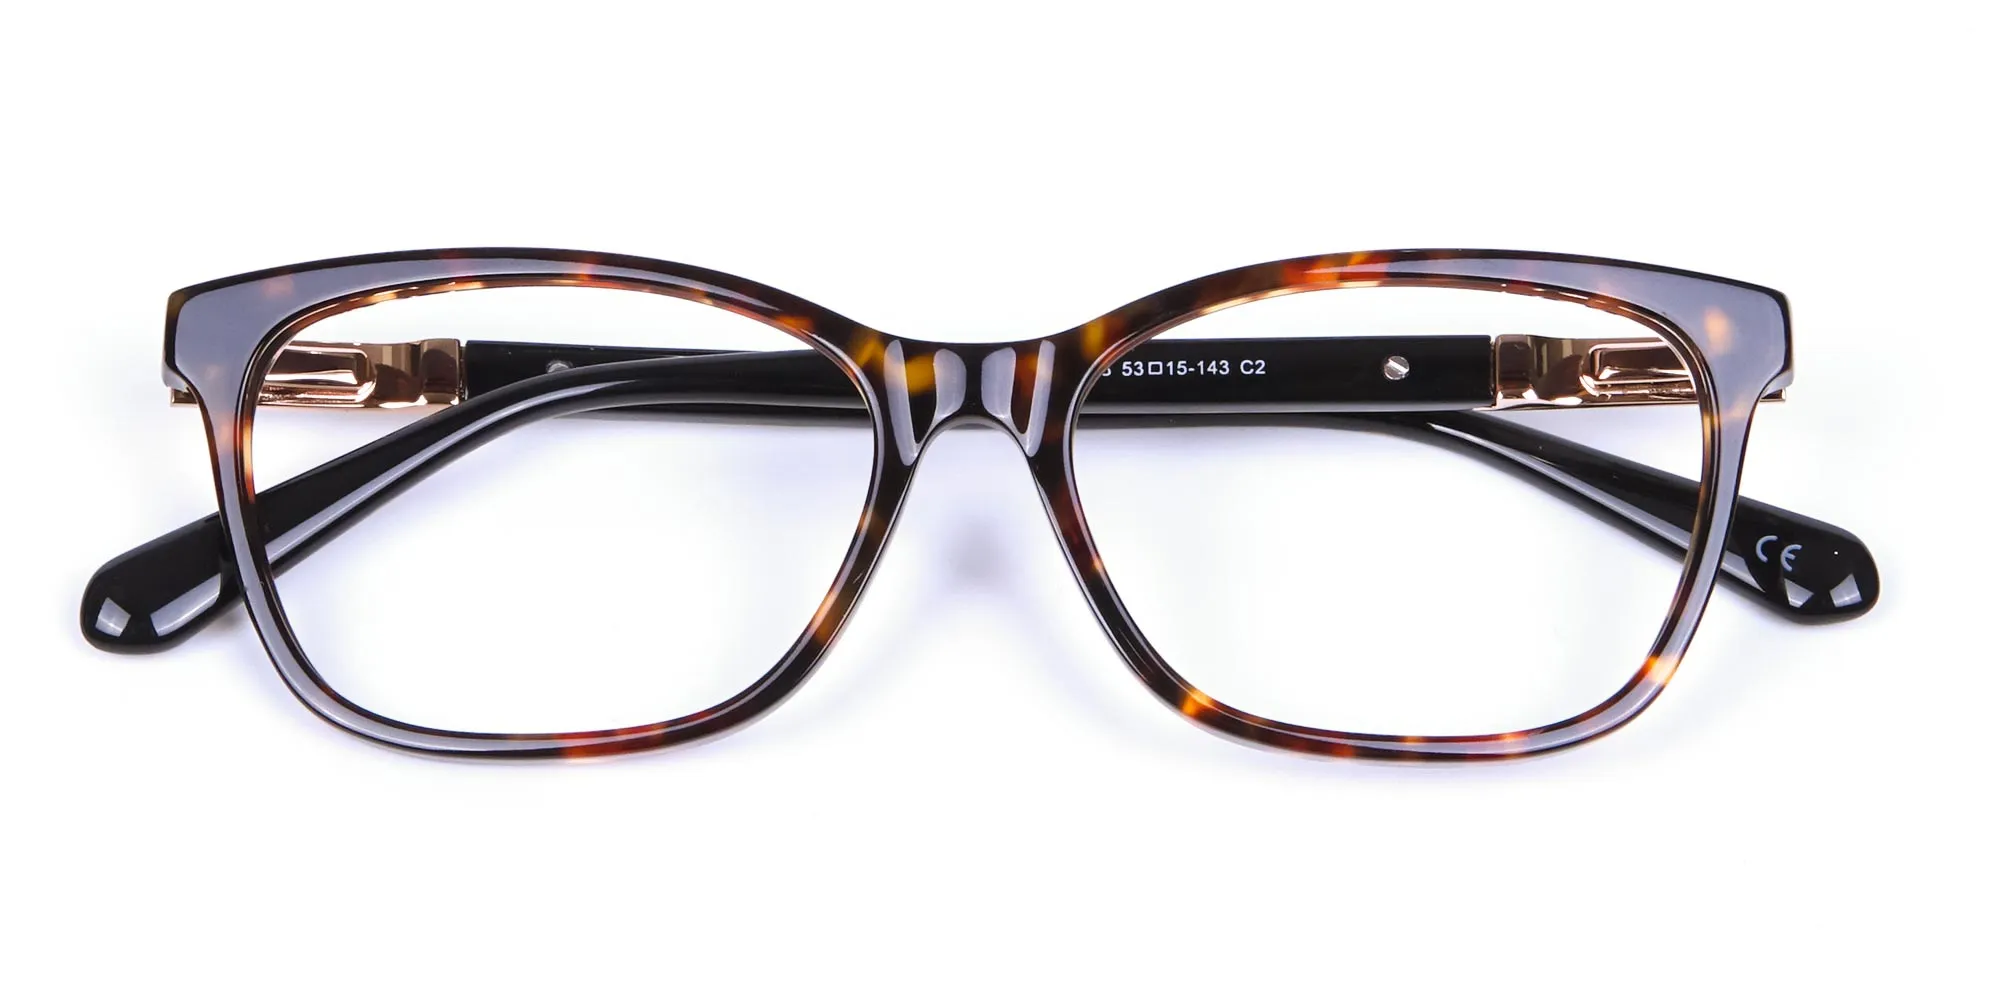 Tortoiseshell Cat Eye Glasses for Women - 1